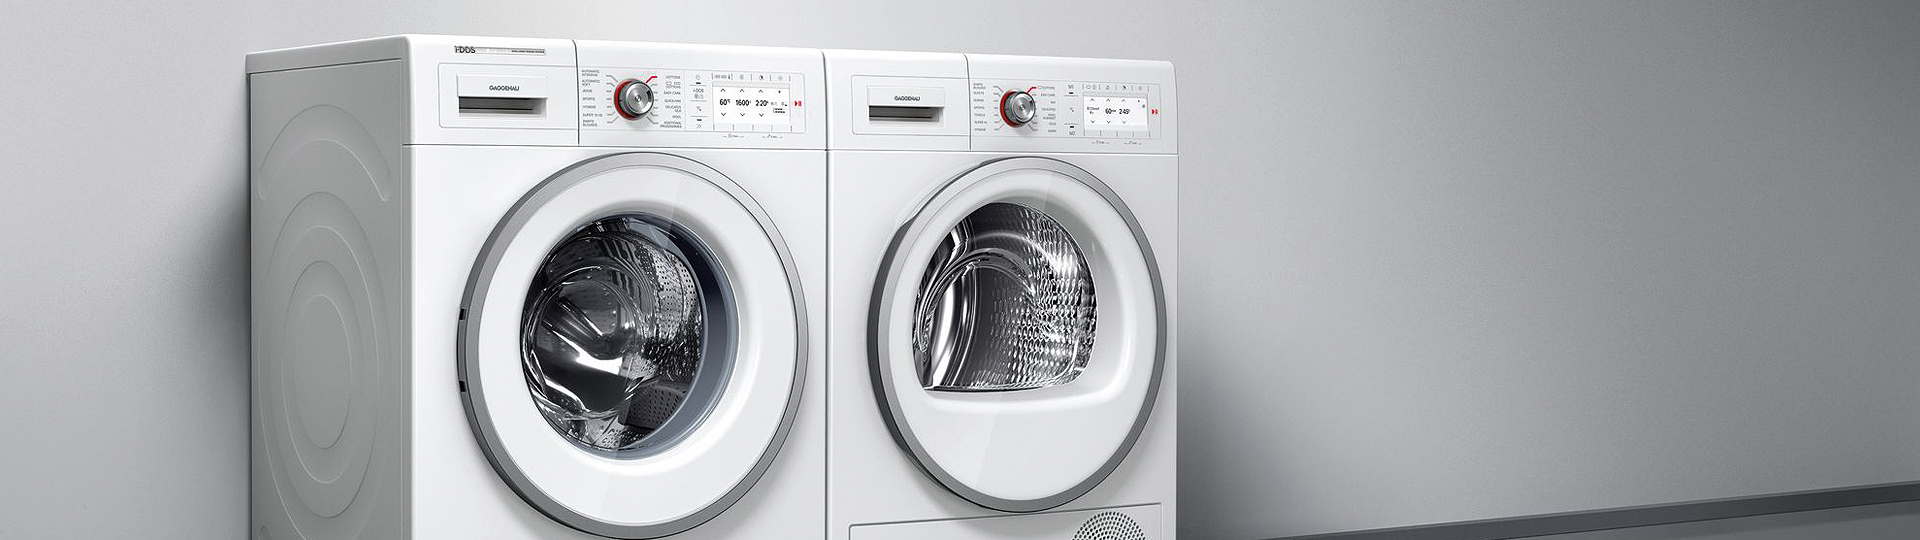 Gaggenau Waschmaschine und Trockner nebeneinander in einer grauen kulisse